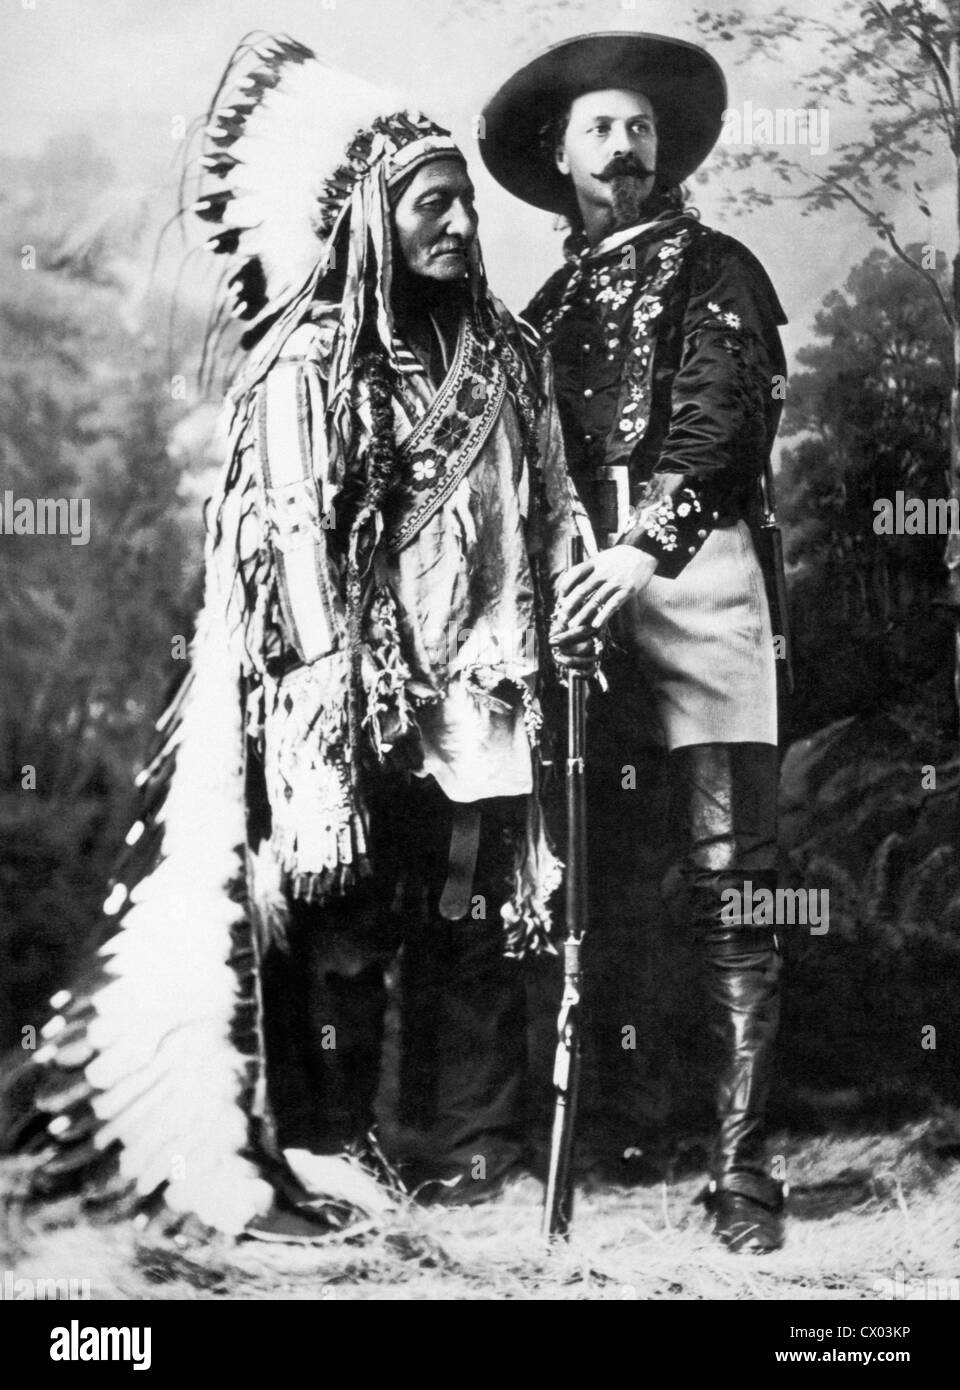 Toro Seduto, Sioux Chief e Buffalo Bill Cody, circa 1885 Foto Stock